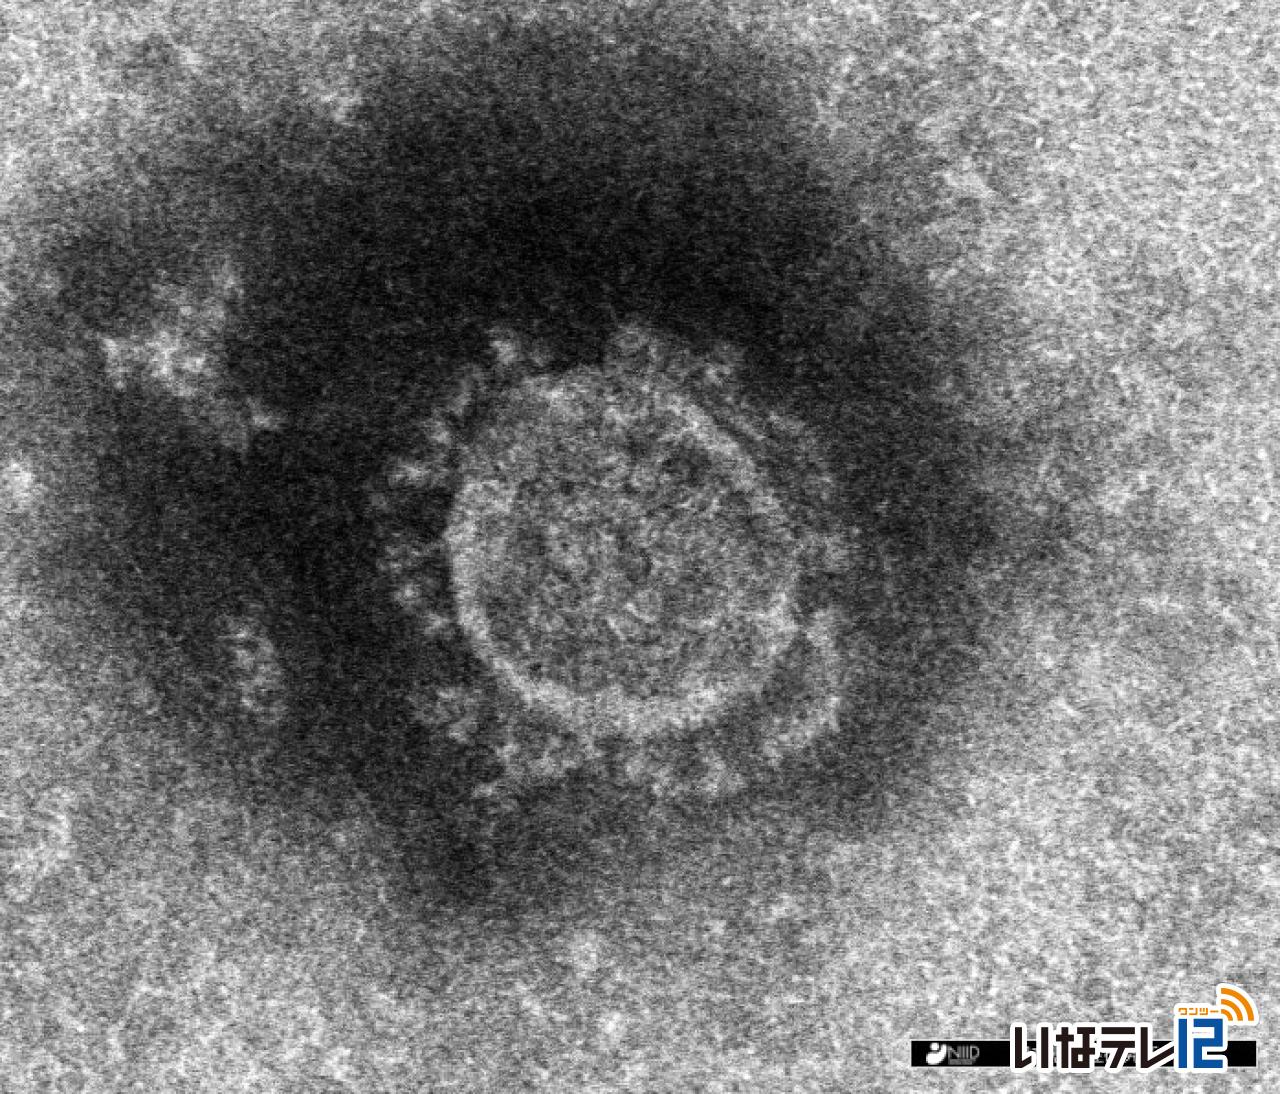 長野県内で新たに上伊那の３２６人を含む３，５９９人の新型コロナウイルスへの感染を確認